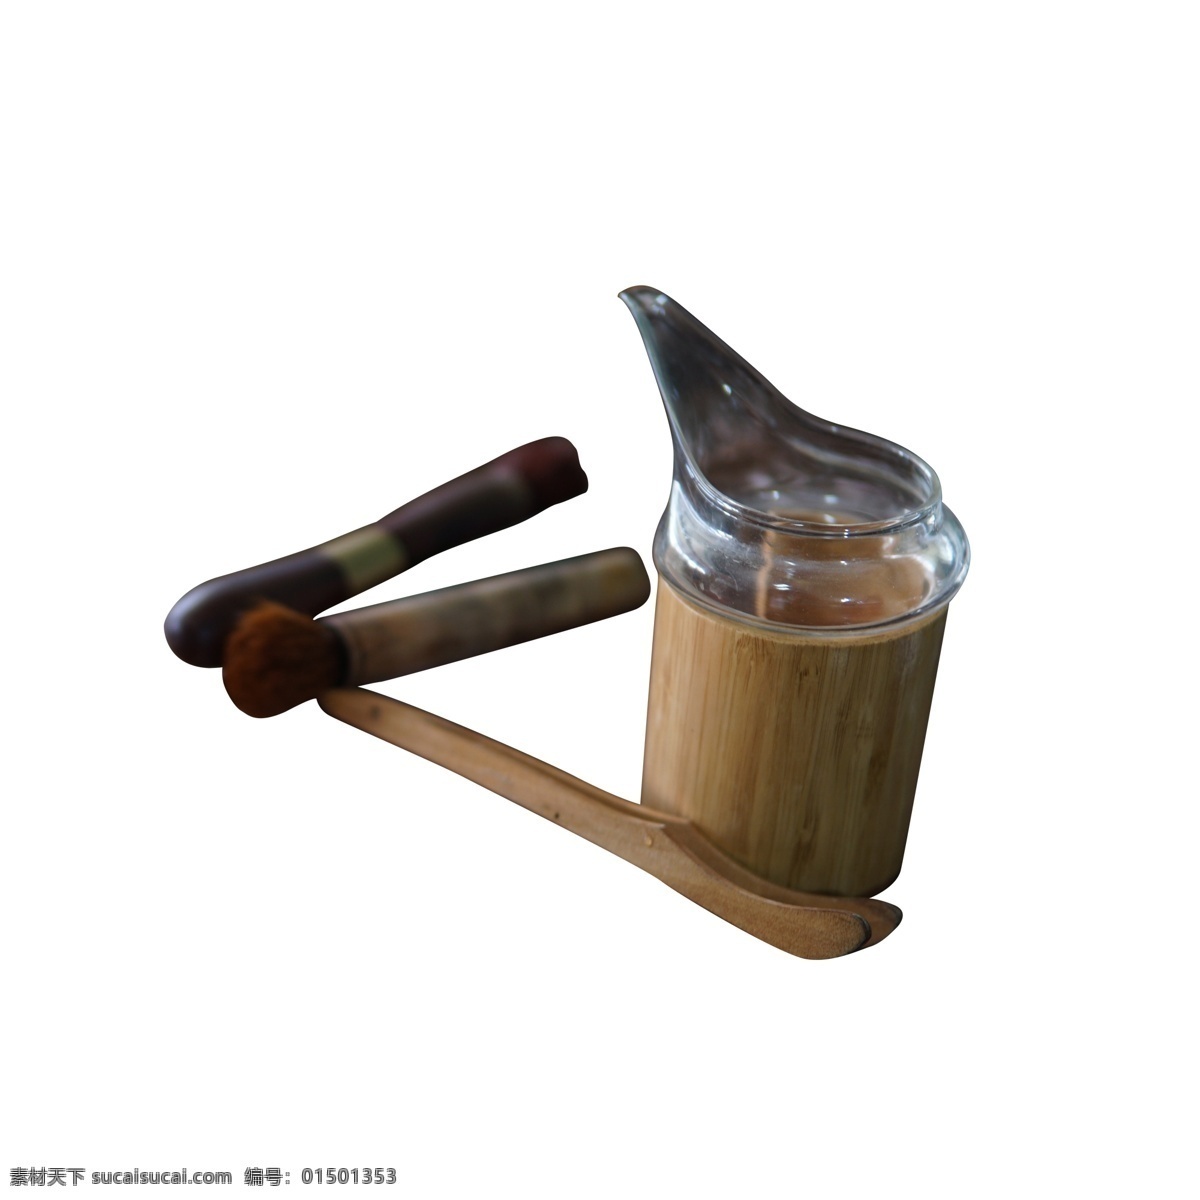 一些 木制 精美 茶具 功夫茶 茶杯 杯子 镊子 木 古典 茶桌 茶室 木制的 茶文化 一些茶具 竹制品